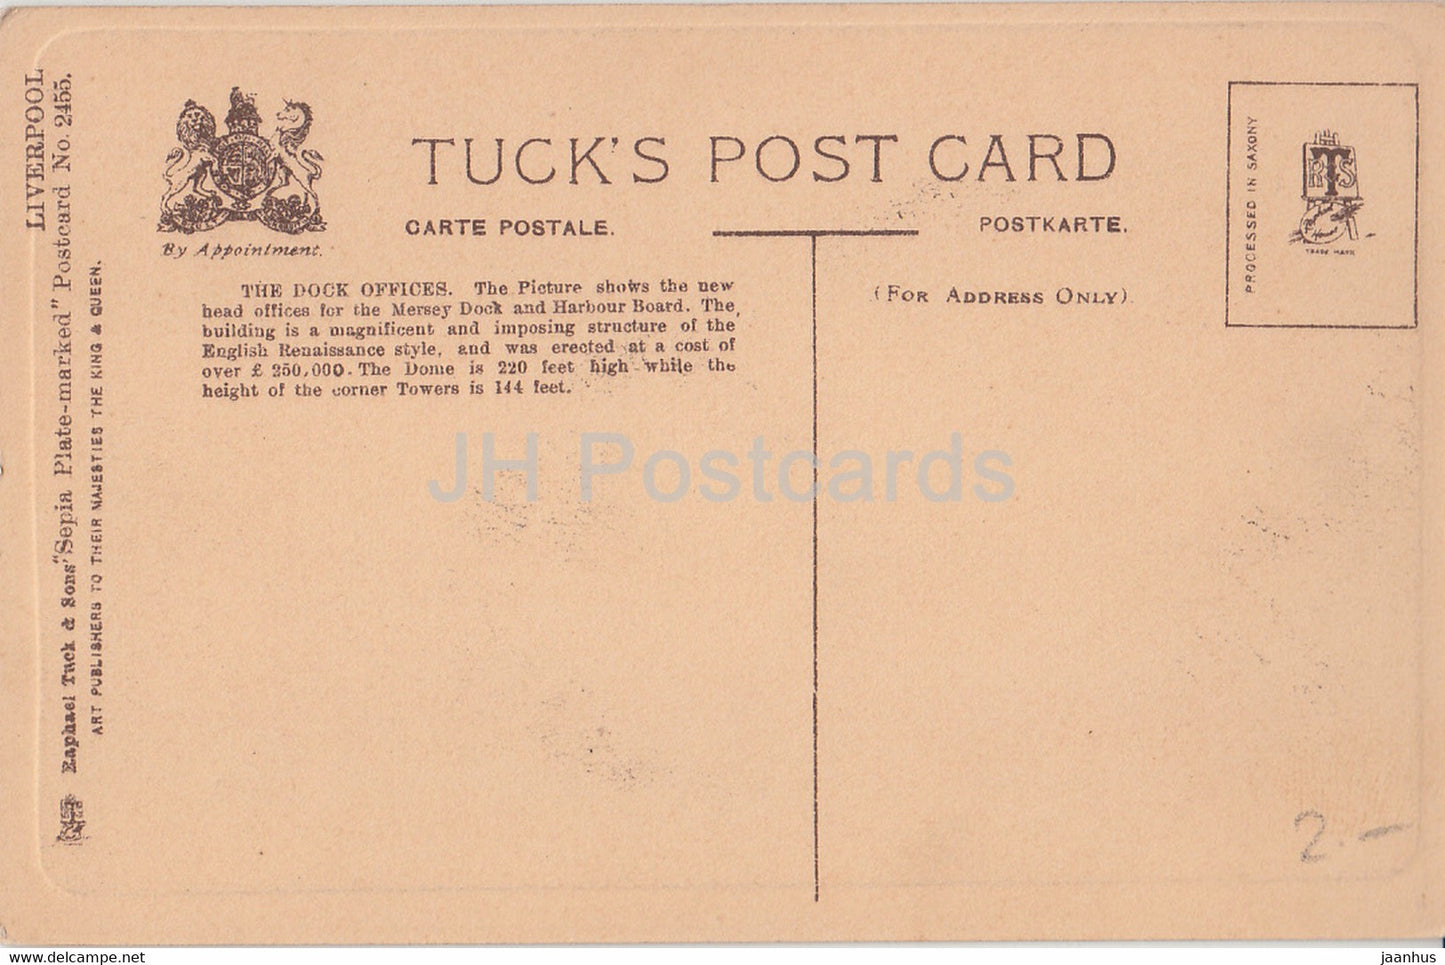 Liverpool - The Dock Offices - 2455 - old postcard - England - United Kingdom - unused